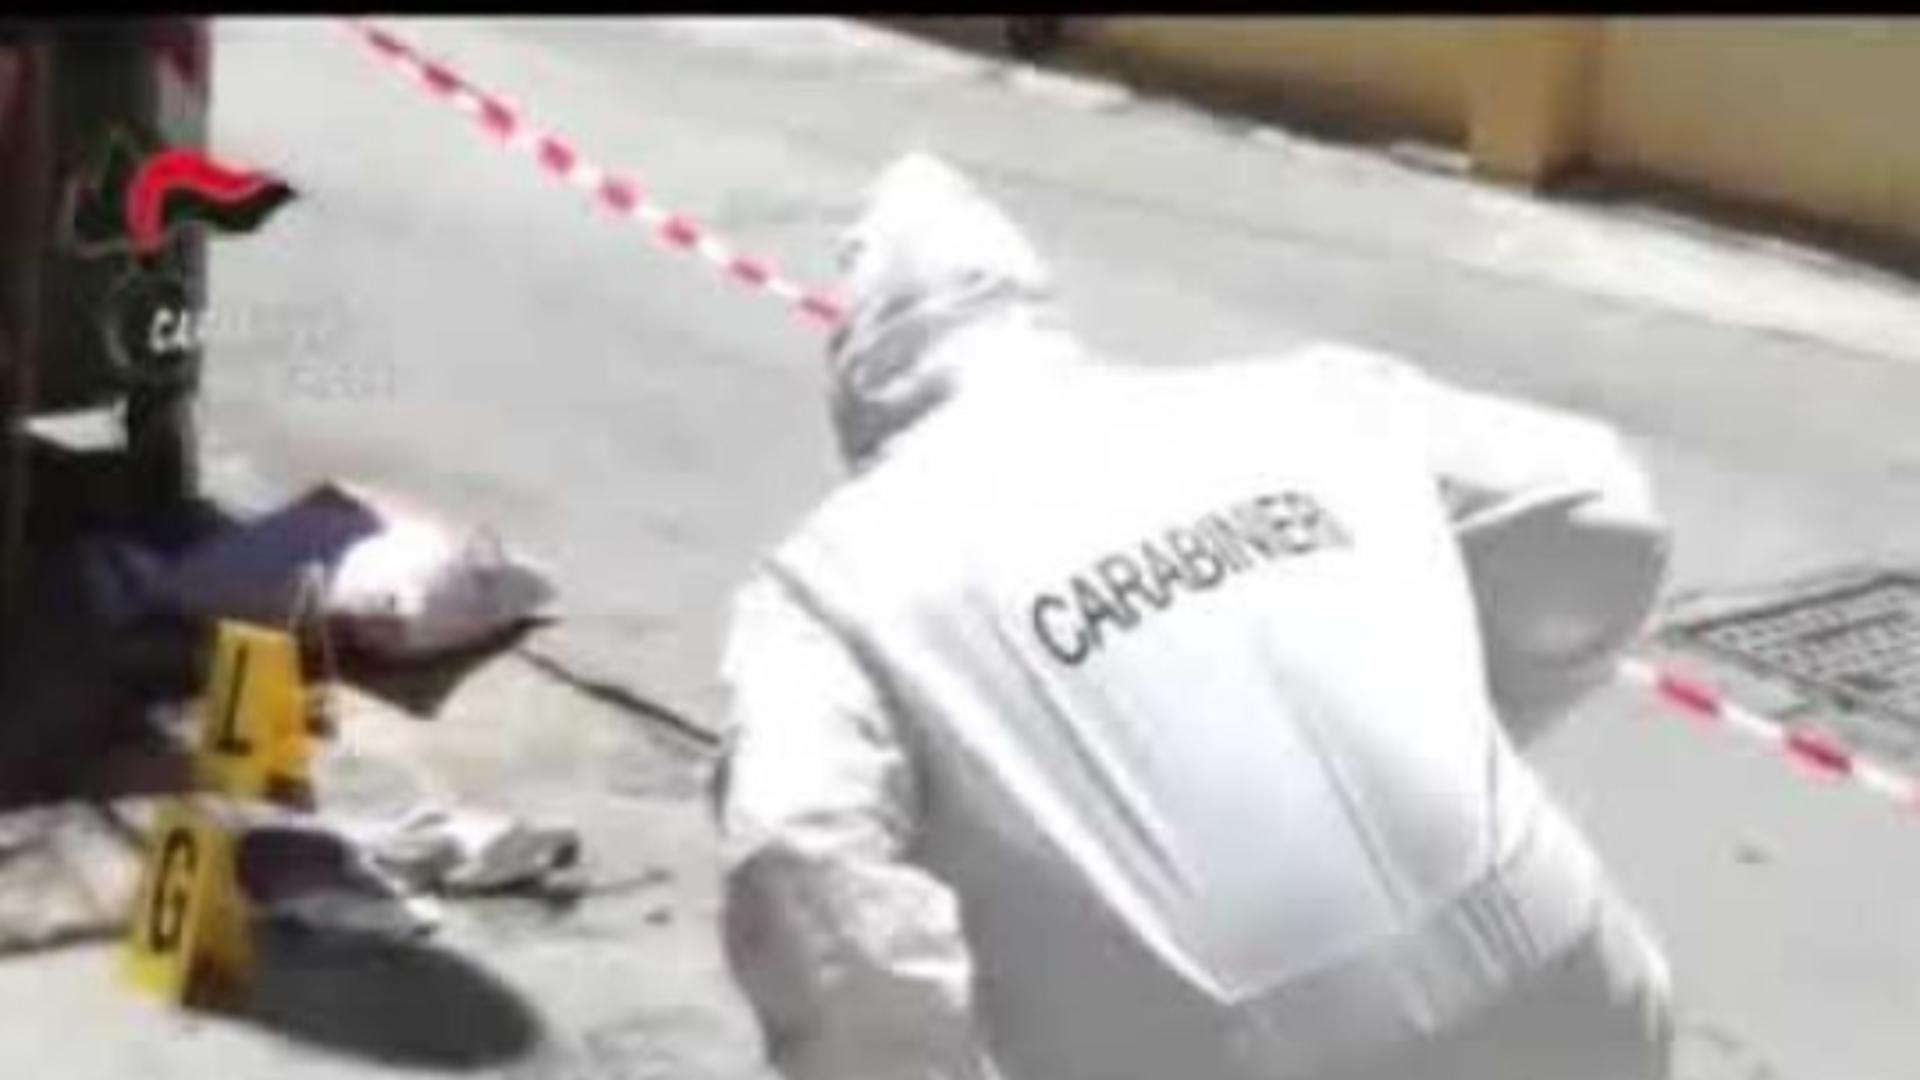 Crimă îngrozitoare comisă de un român în Italia. Și-a aruncat peste balcon partenera, o braziliancă de 46 de ani, după o dispută violentă